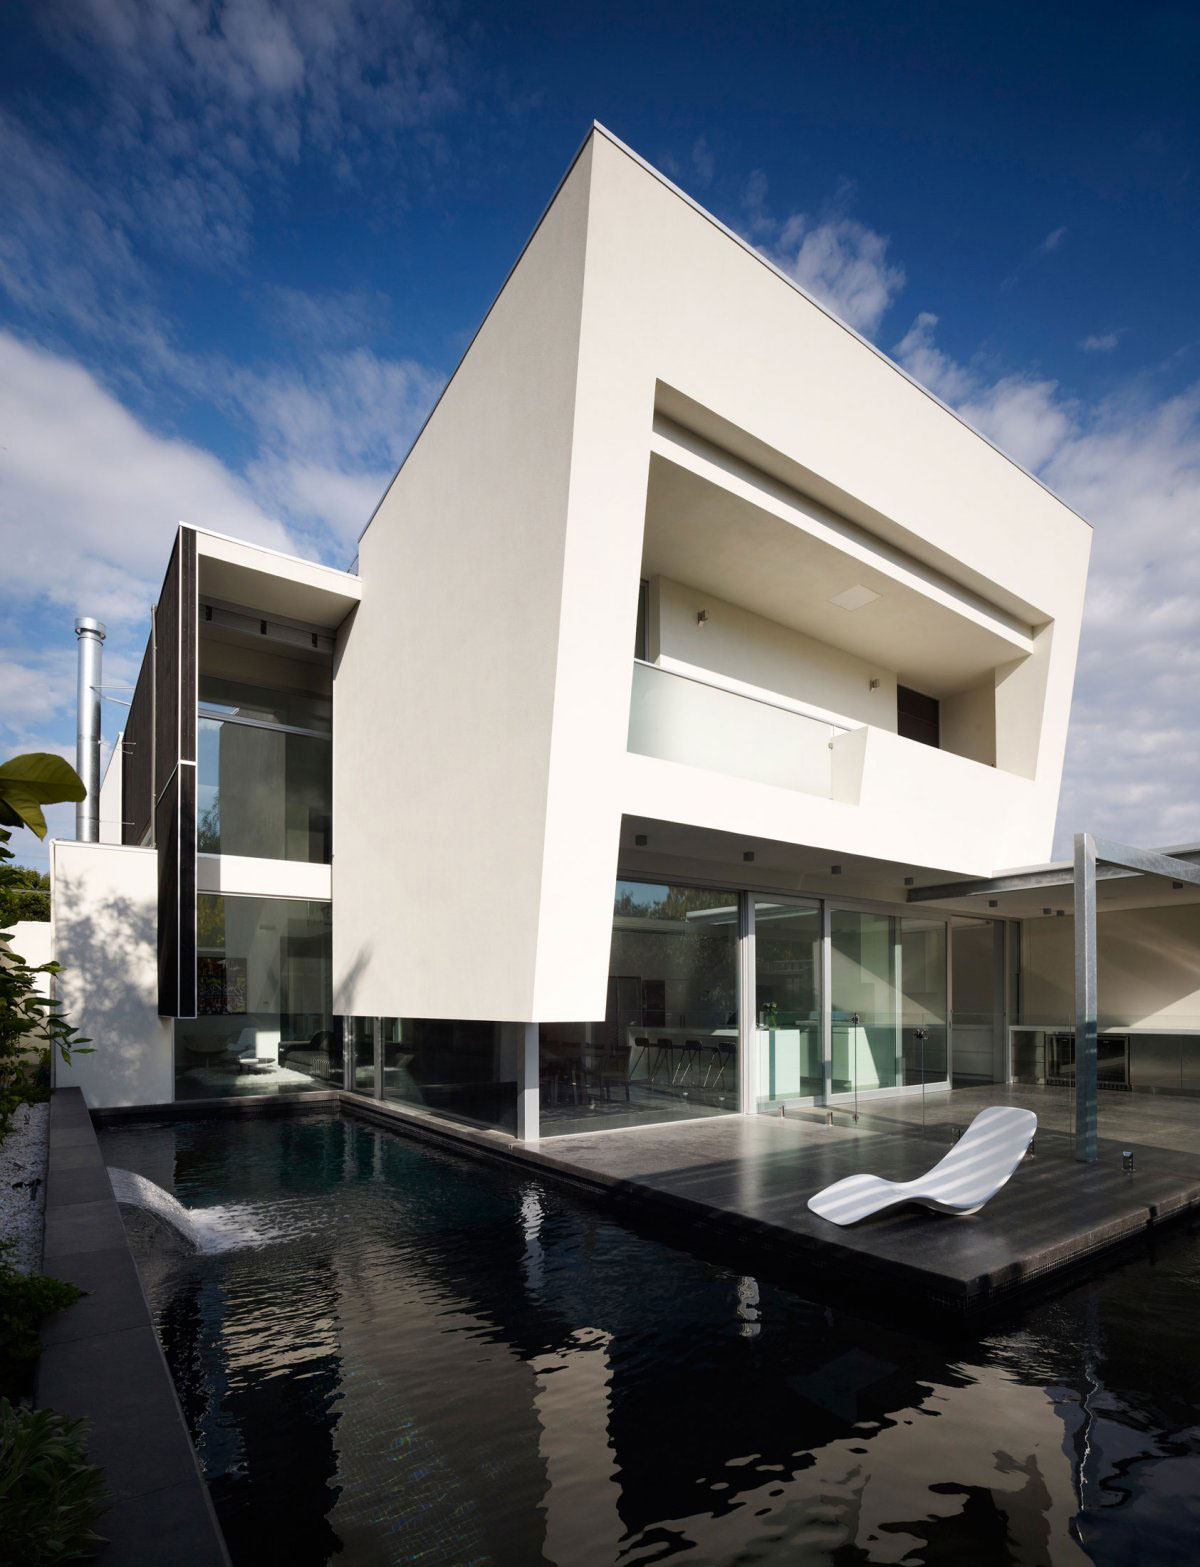 Robinson-Road-House-by-Steve-Domoney-Architecture Australisk arkitektur och några vackra hus för att inspirera dig